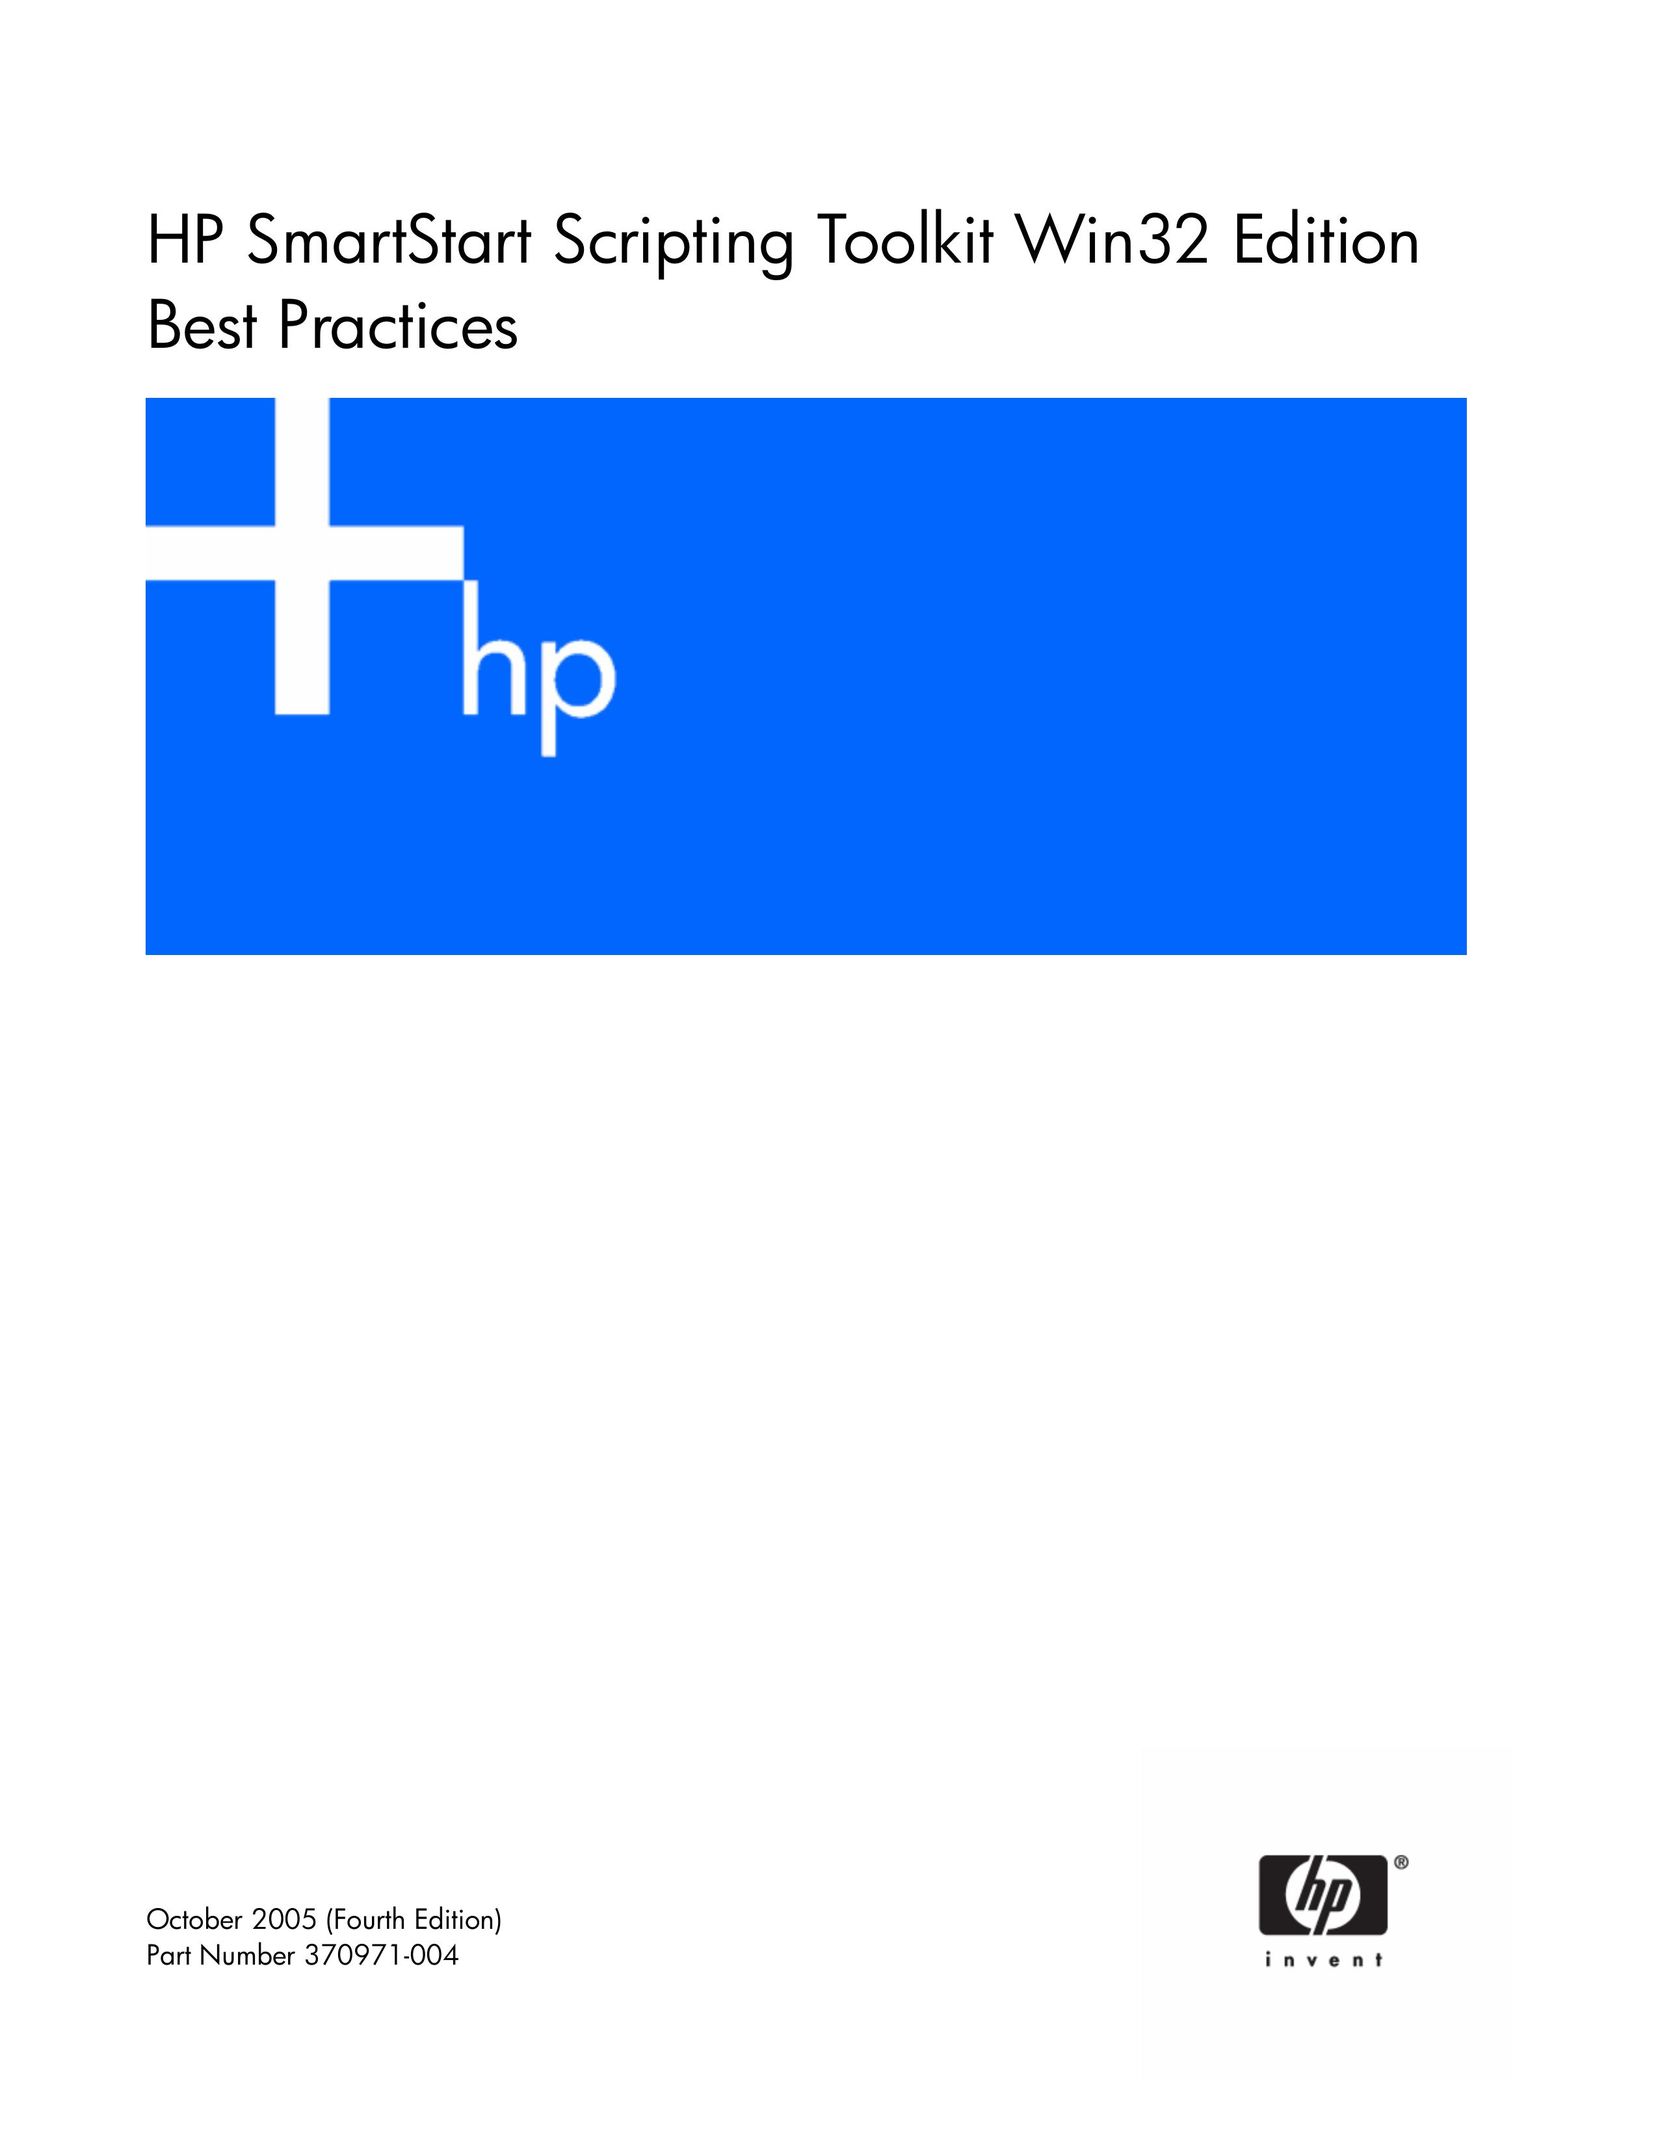 HP (Hewlett-Packard) HP SmartStart Scripting Toolkit Win32 Edition Best Practices Computer Accessories User Manual